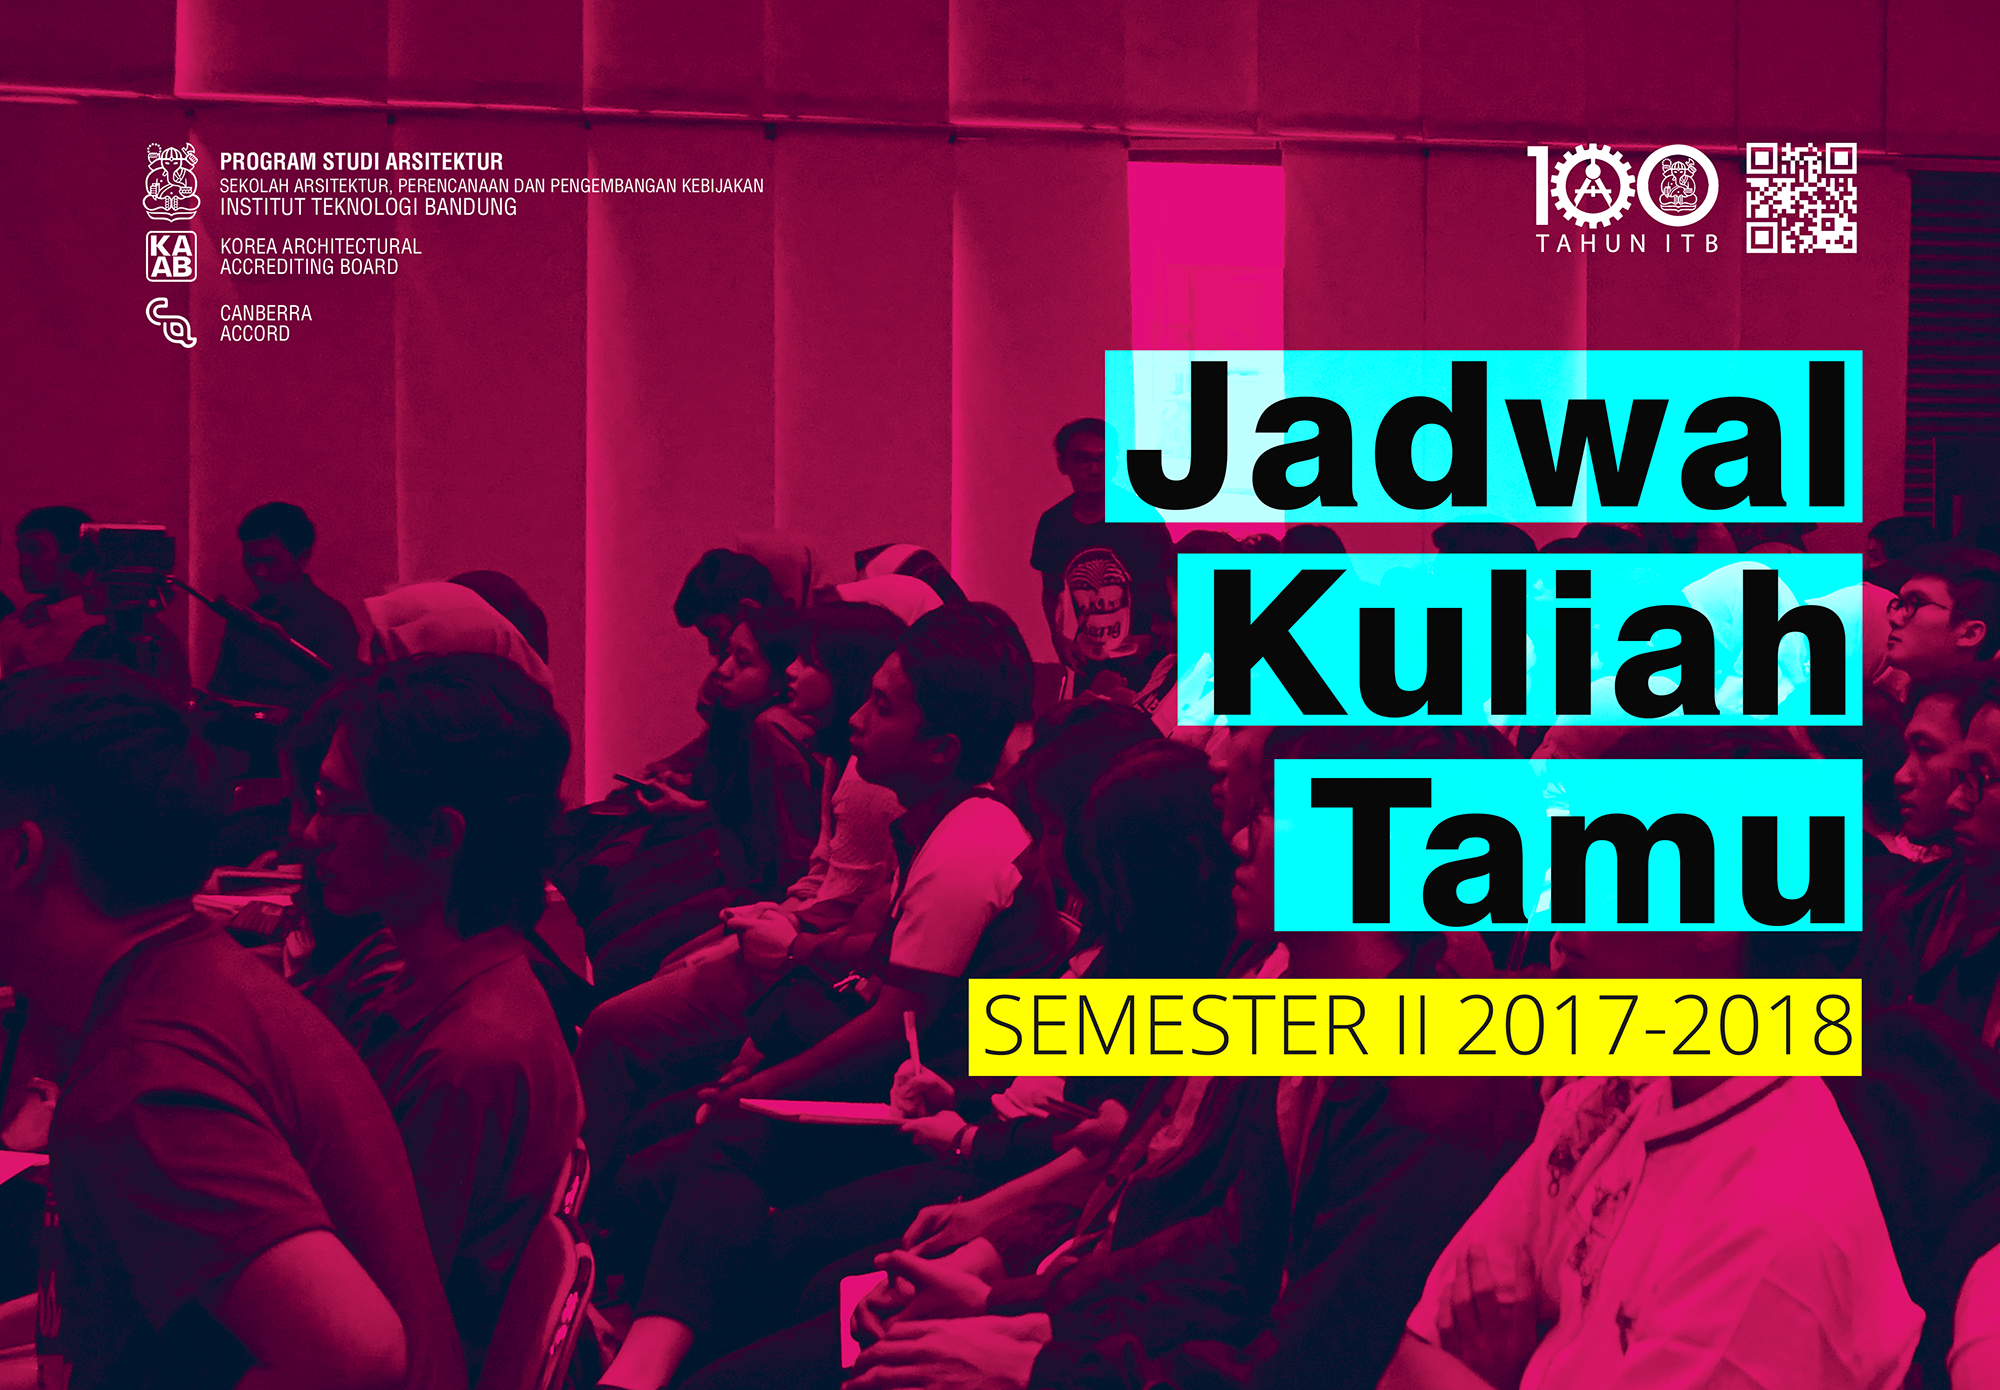 Jadwal Kuliah Tamu Semester II 2017-2018